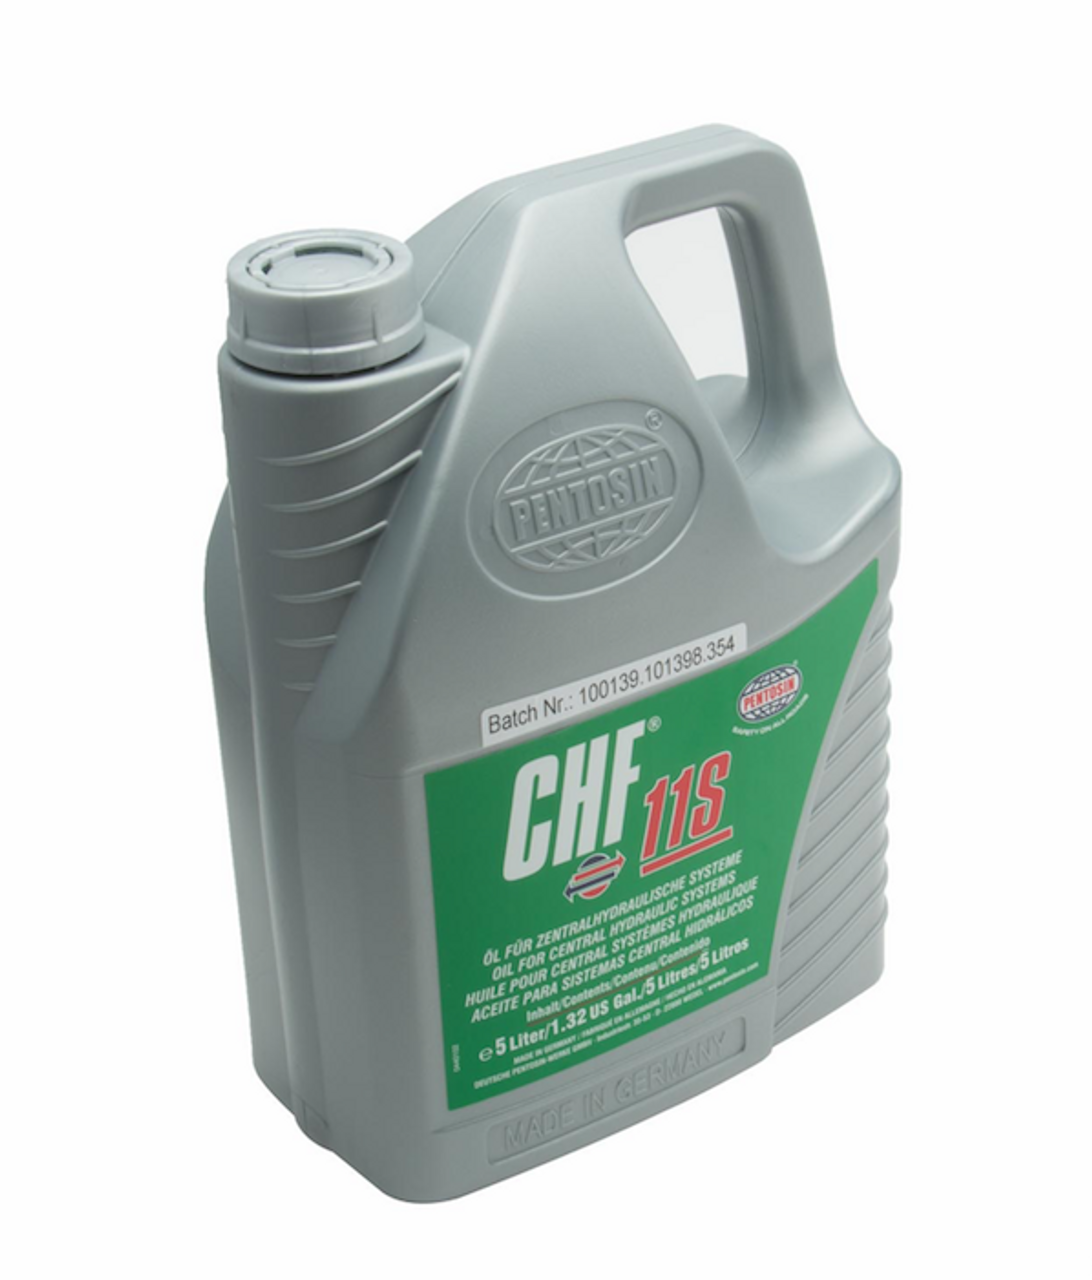 CHF 11S Hydraulic System Fluid (5 Liter) - Pentosin 1405216